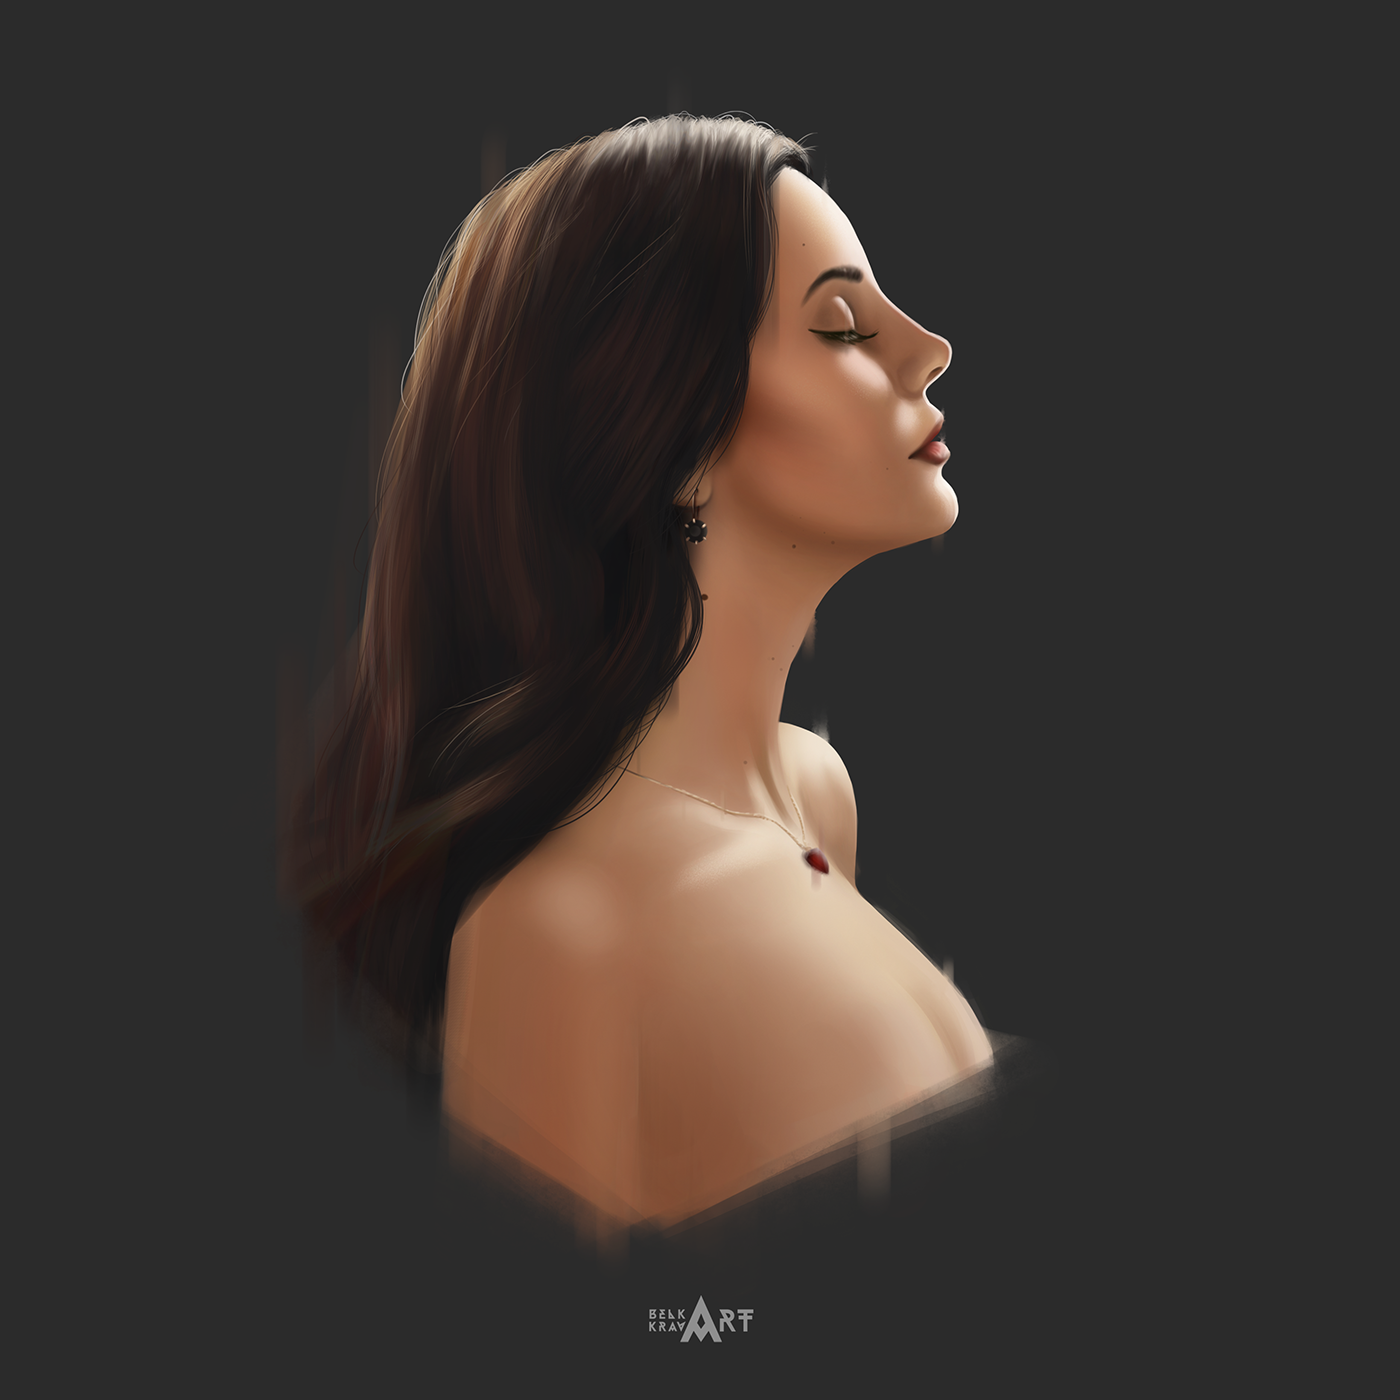 Lana Del Rey portrait art Digital Art  art portrait canvas design Character photoshop